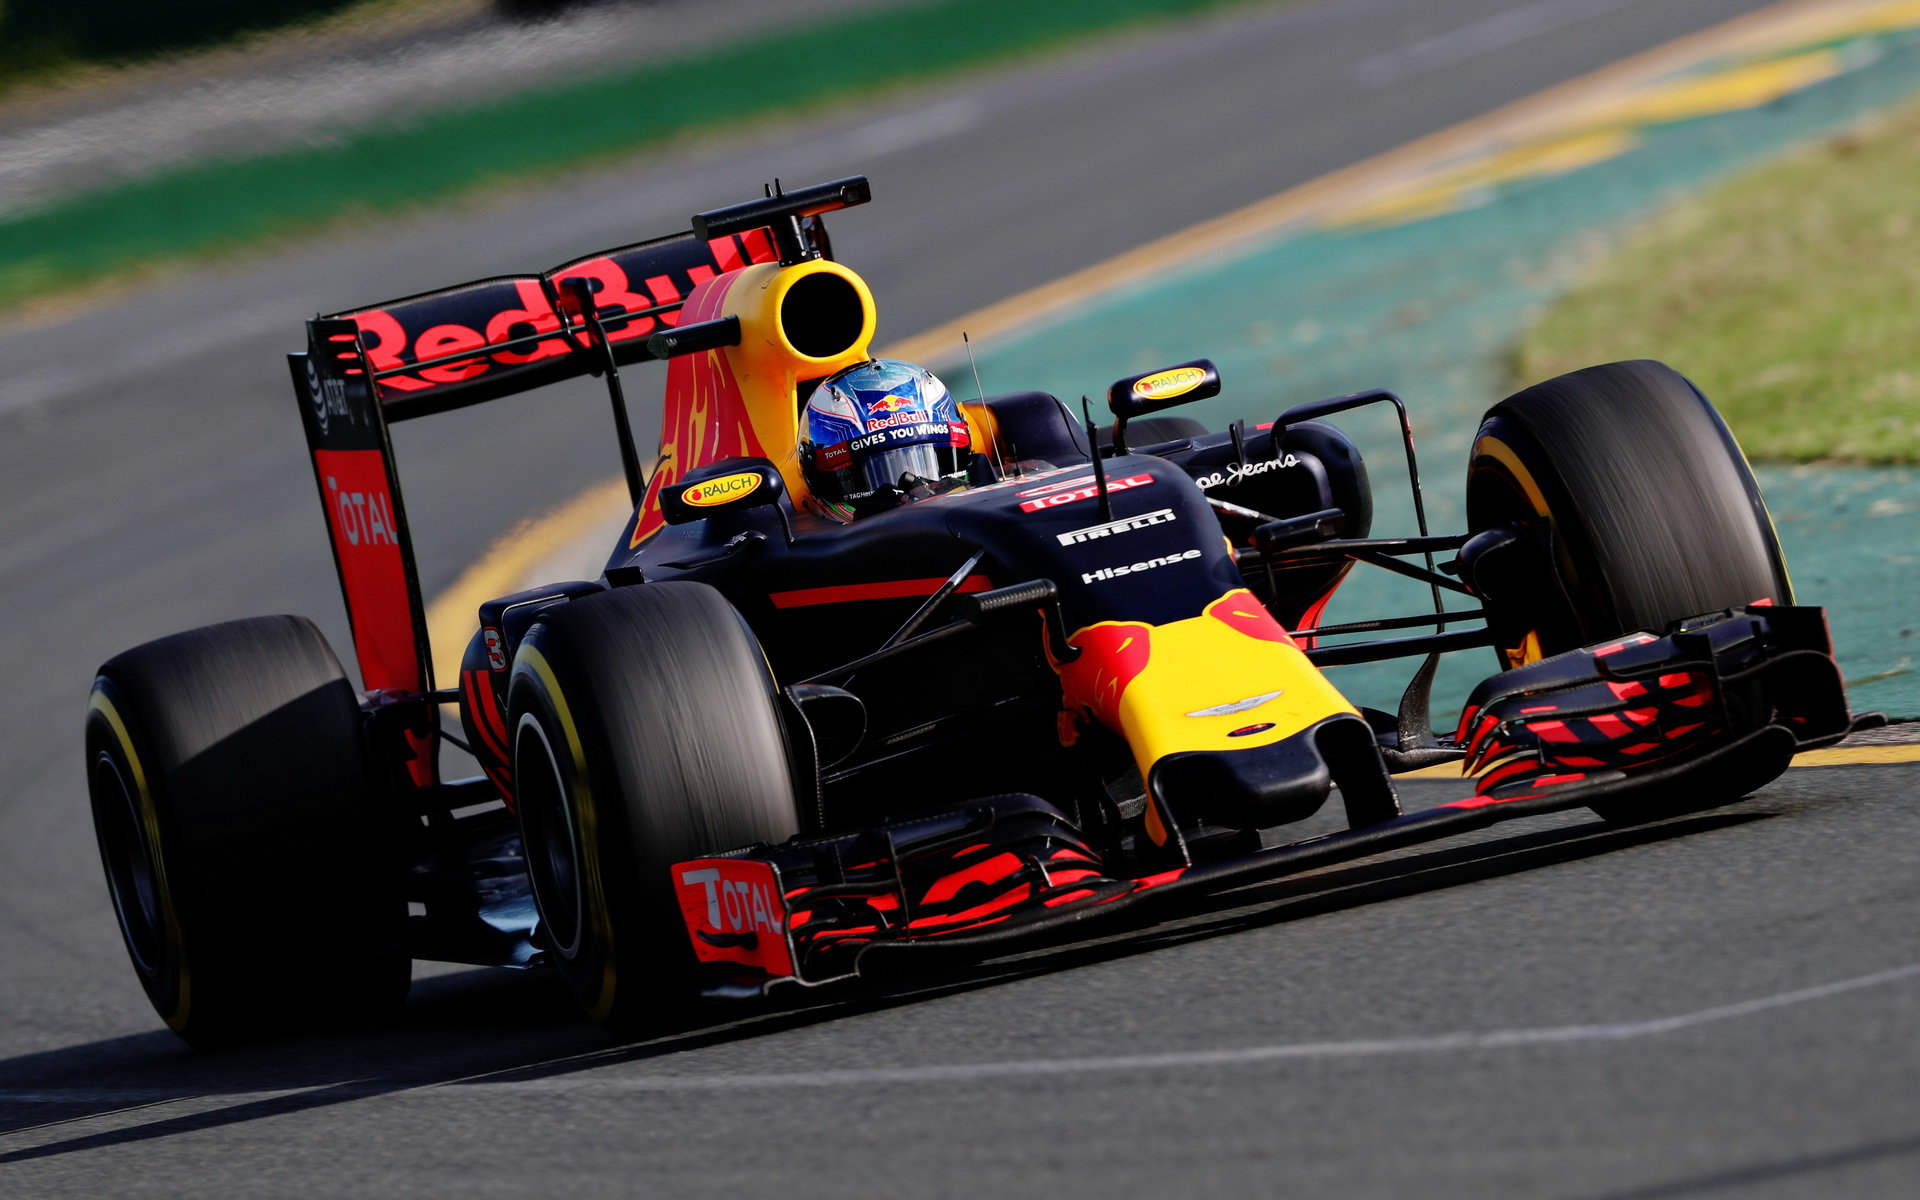 Daniel Ricciardo při závodě v Melbourne